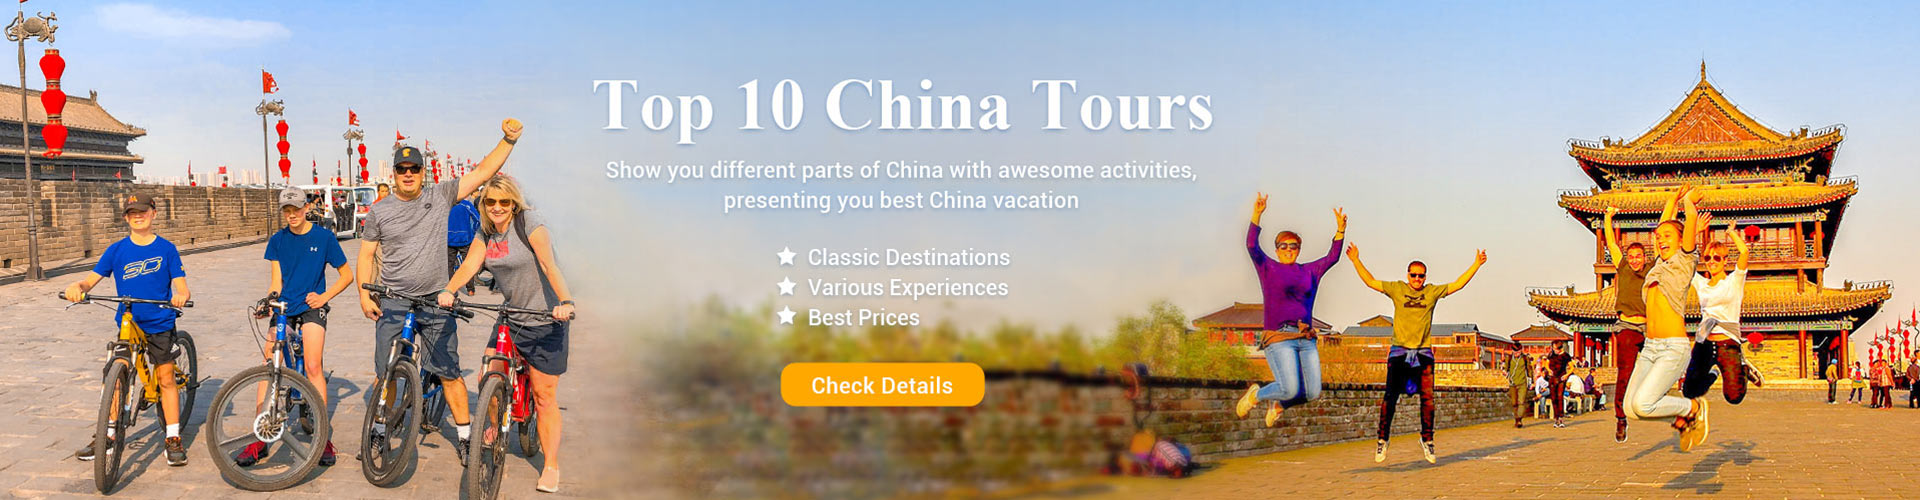 Top 10 China Tours